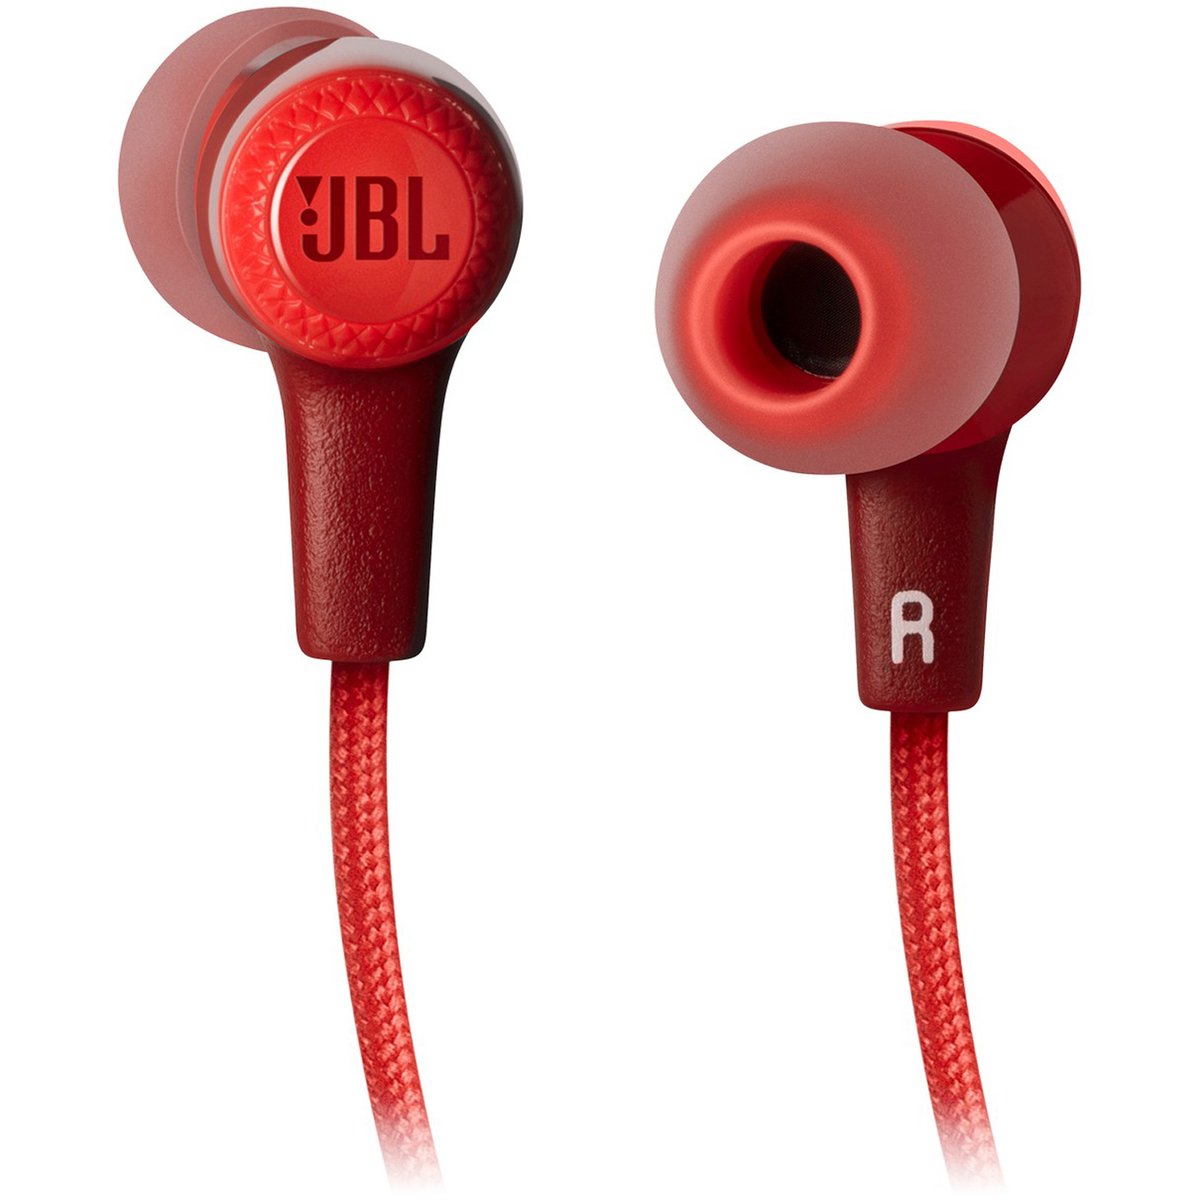 JBL Wireless in-ear Headphones E25BT Red